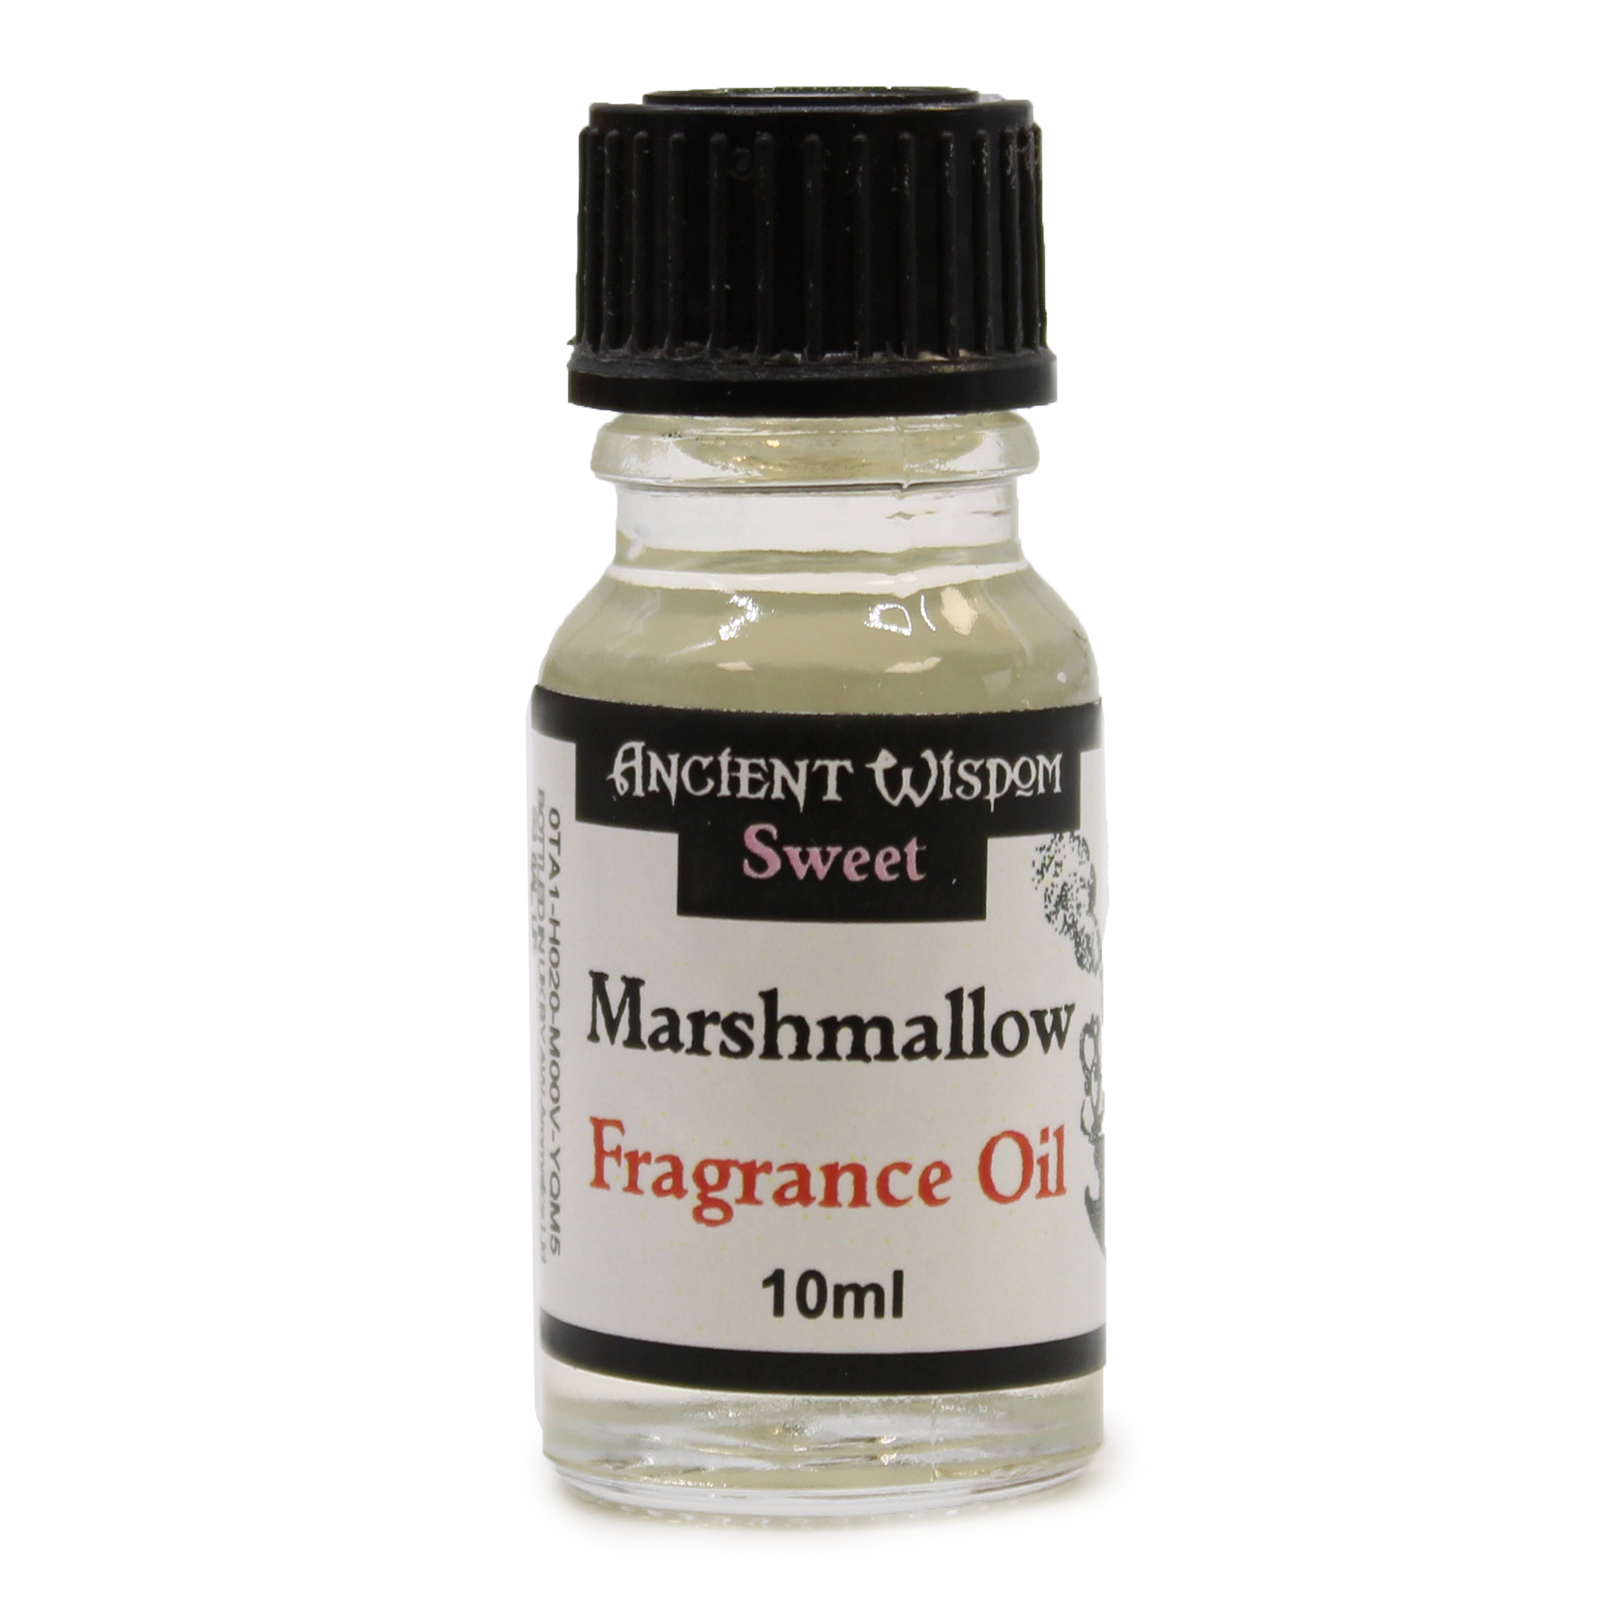 2 x 10ml Marshmallow Fragrance Oil Bottles